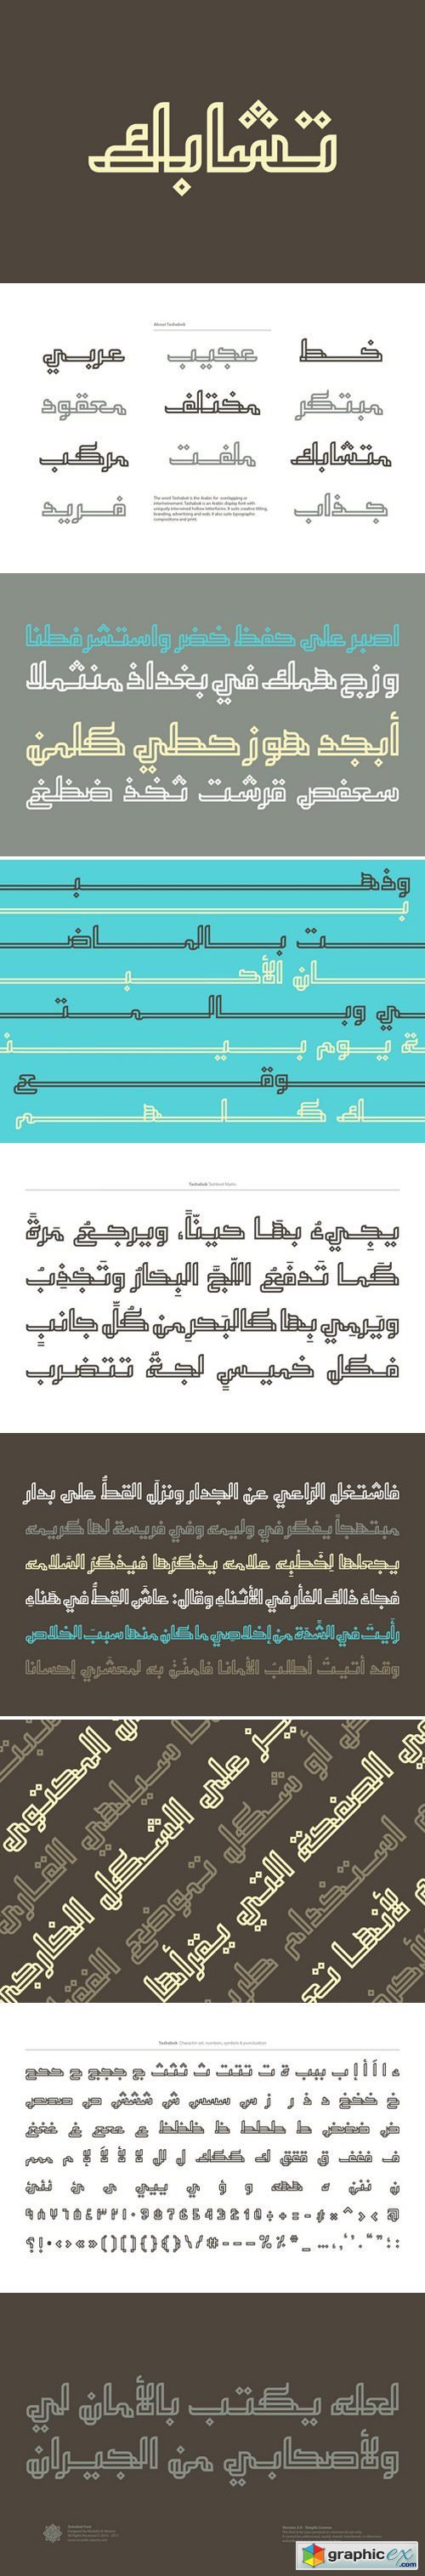 Tashabok - Arabic Font